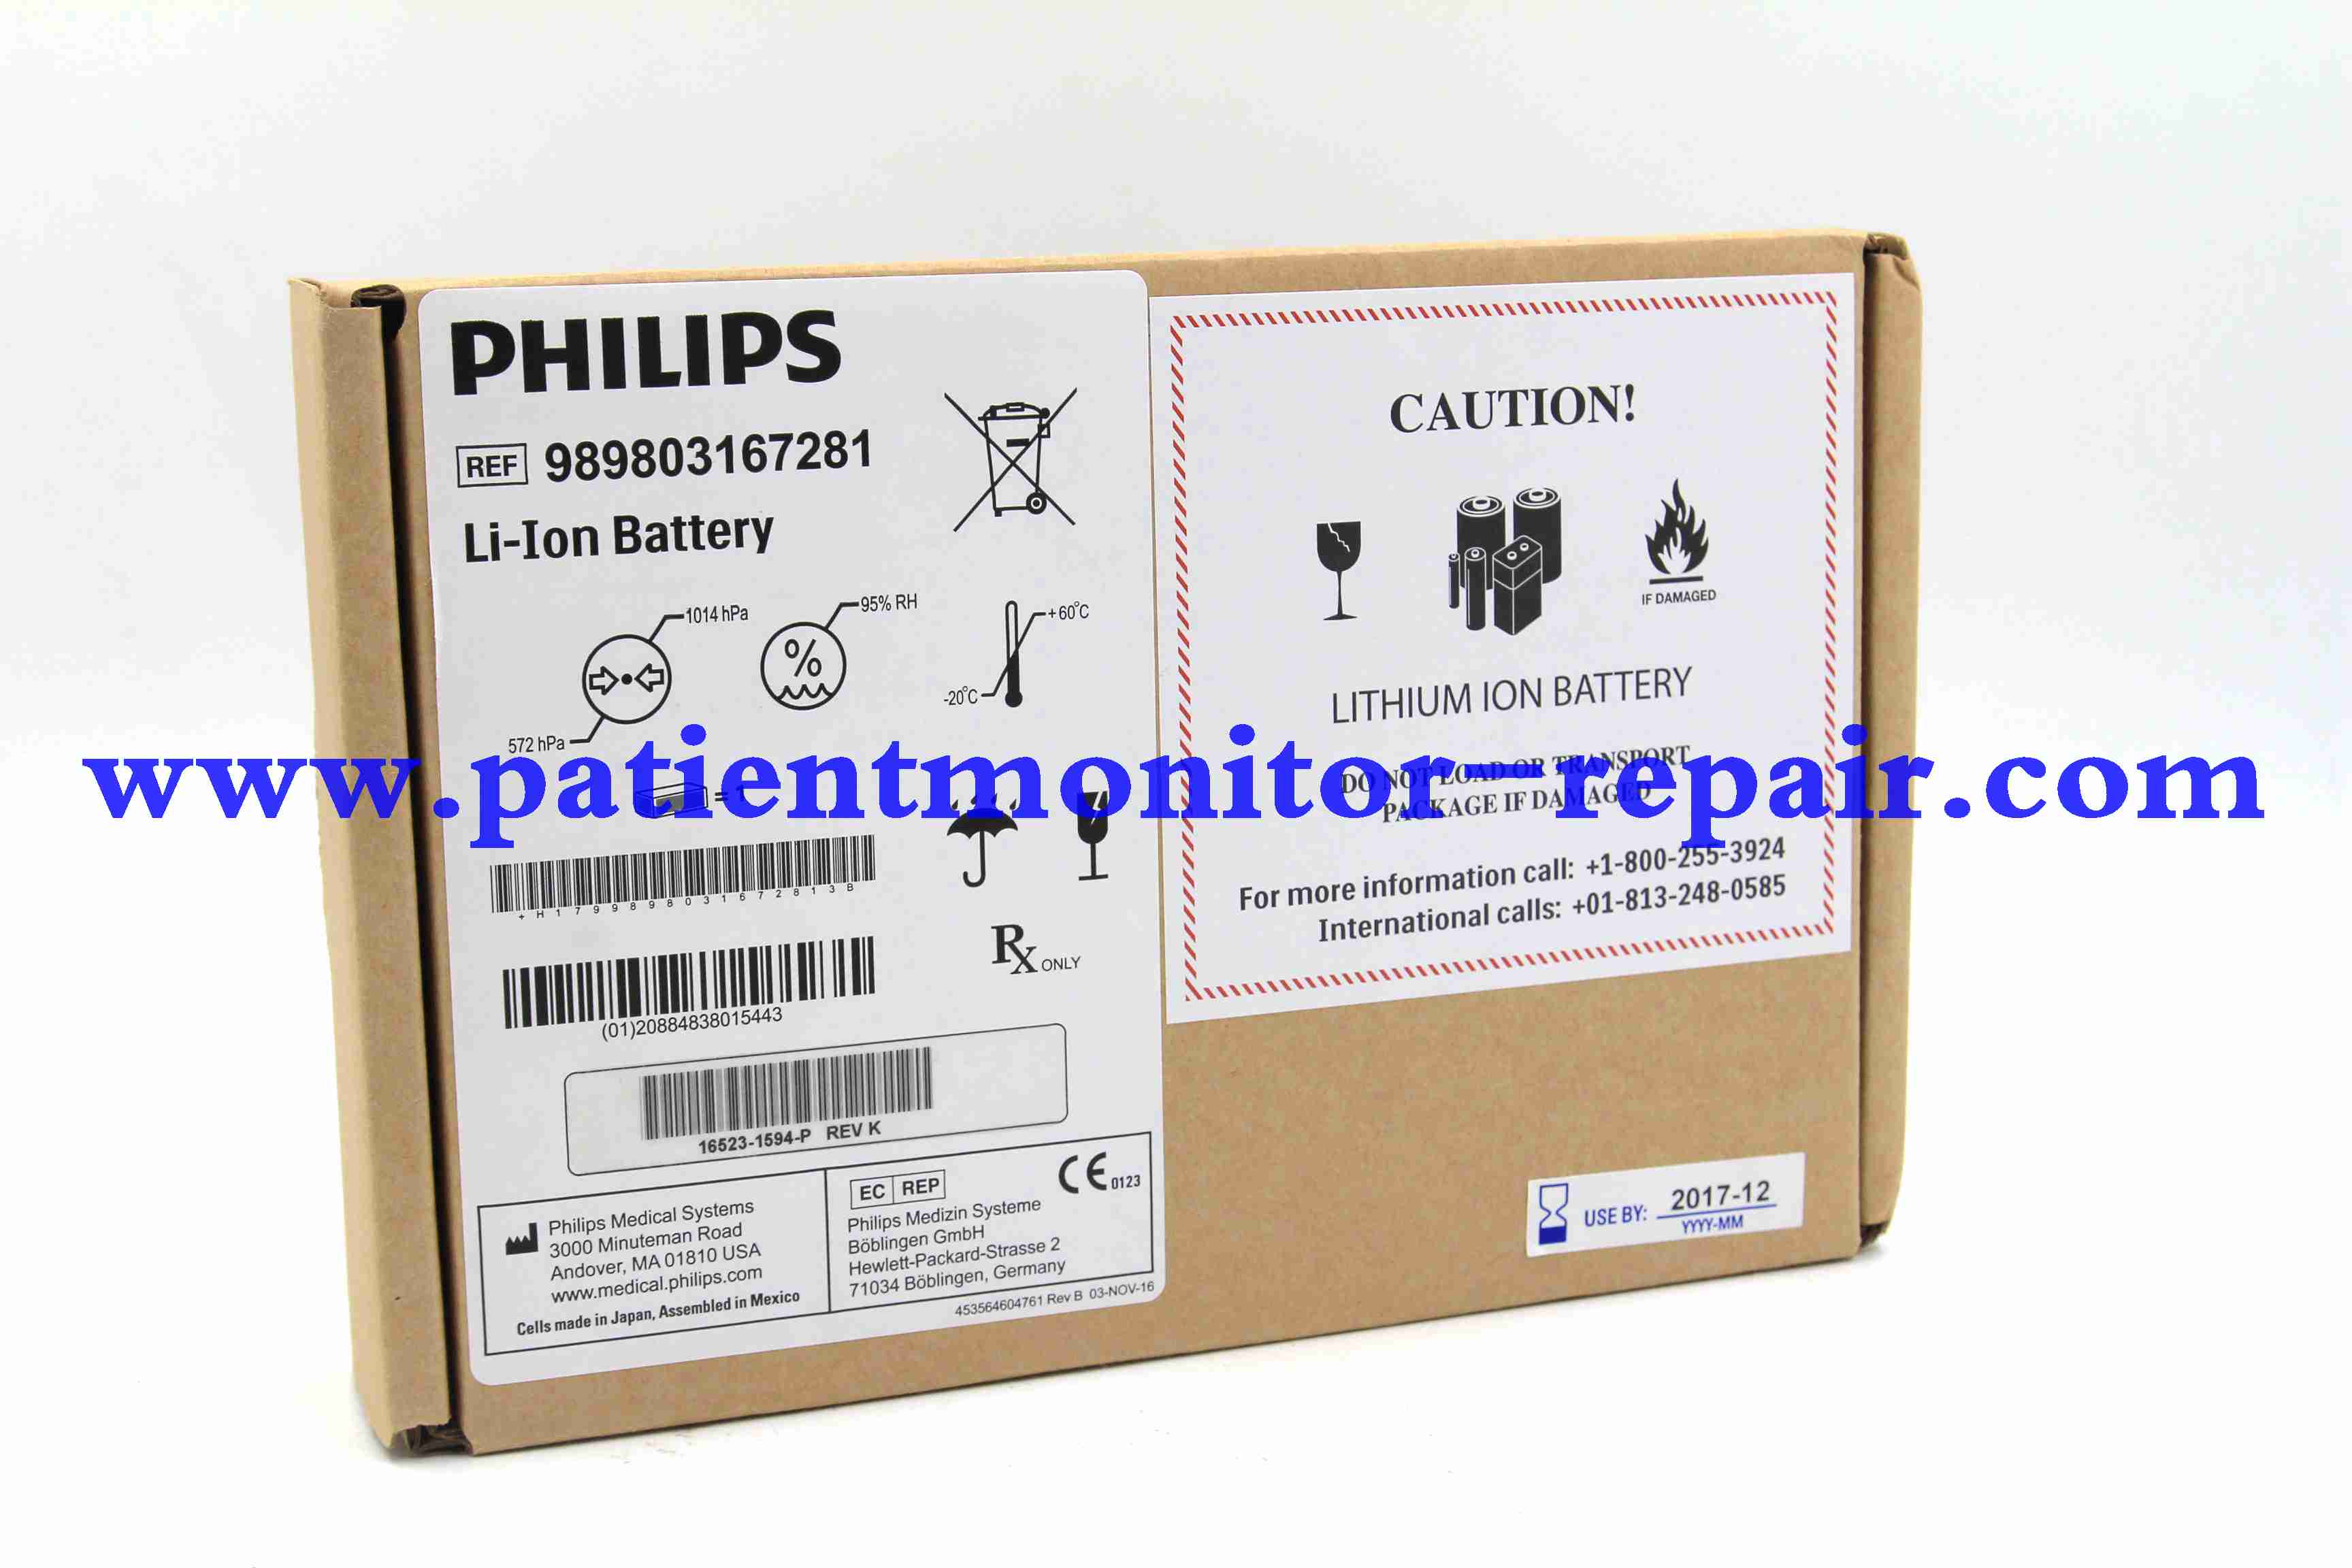  REF 989803167281 HR XL+ defibrillator battery 